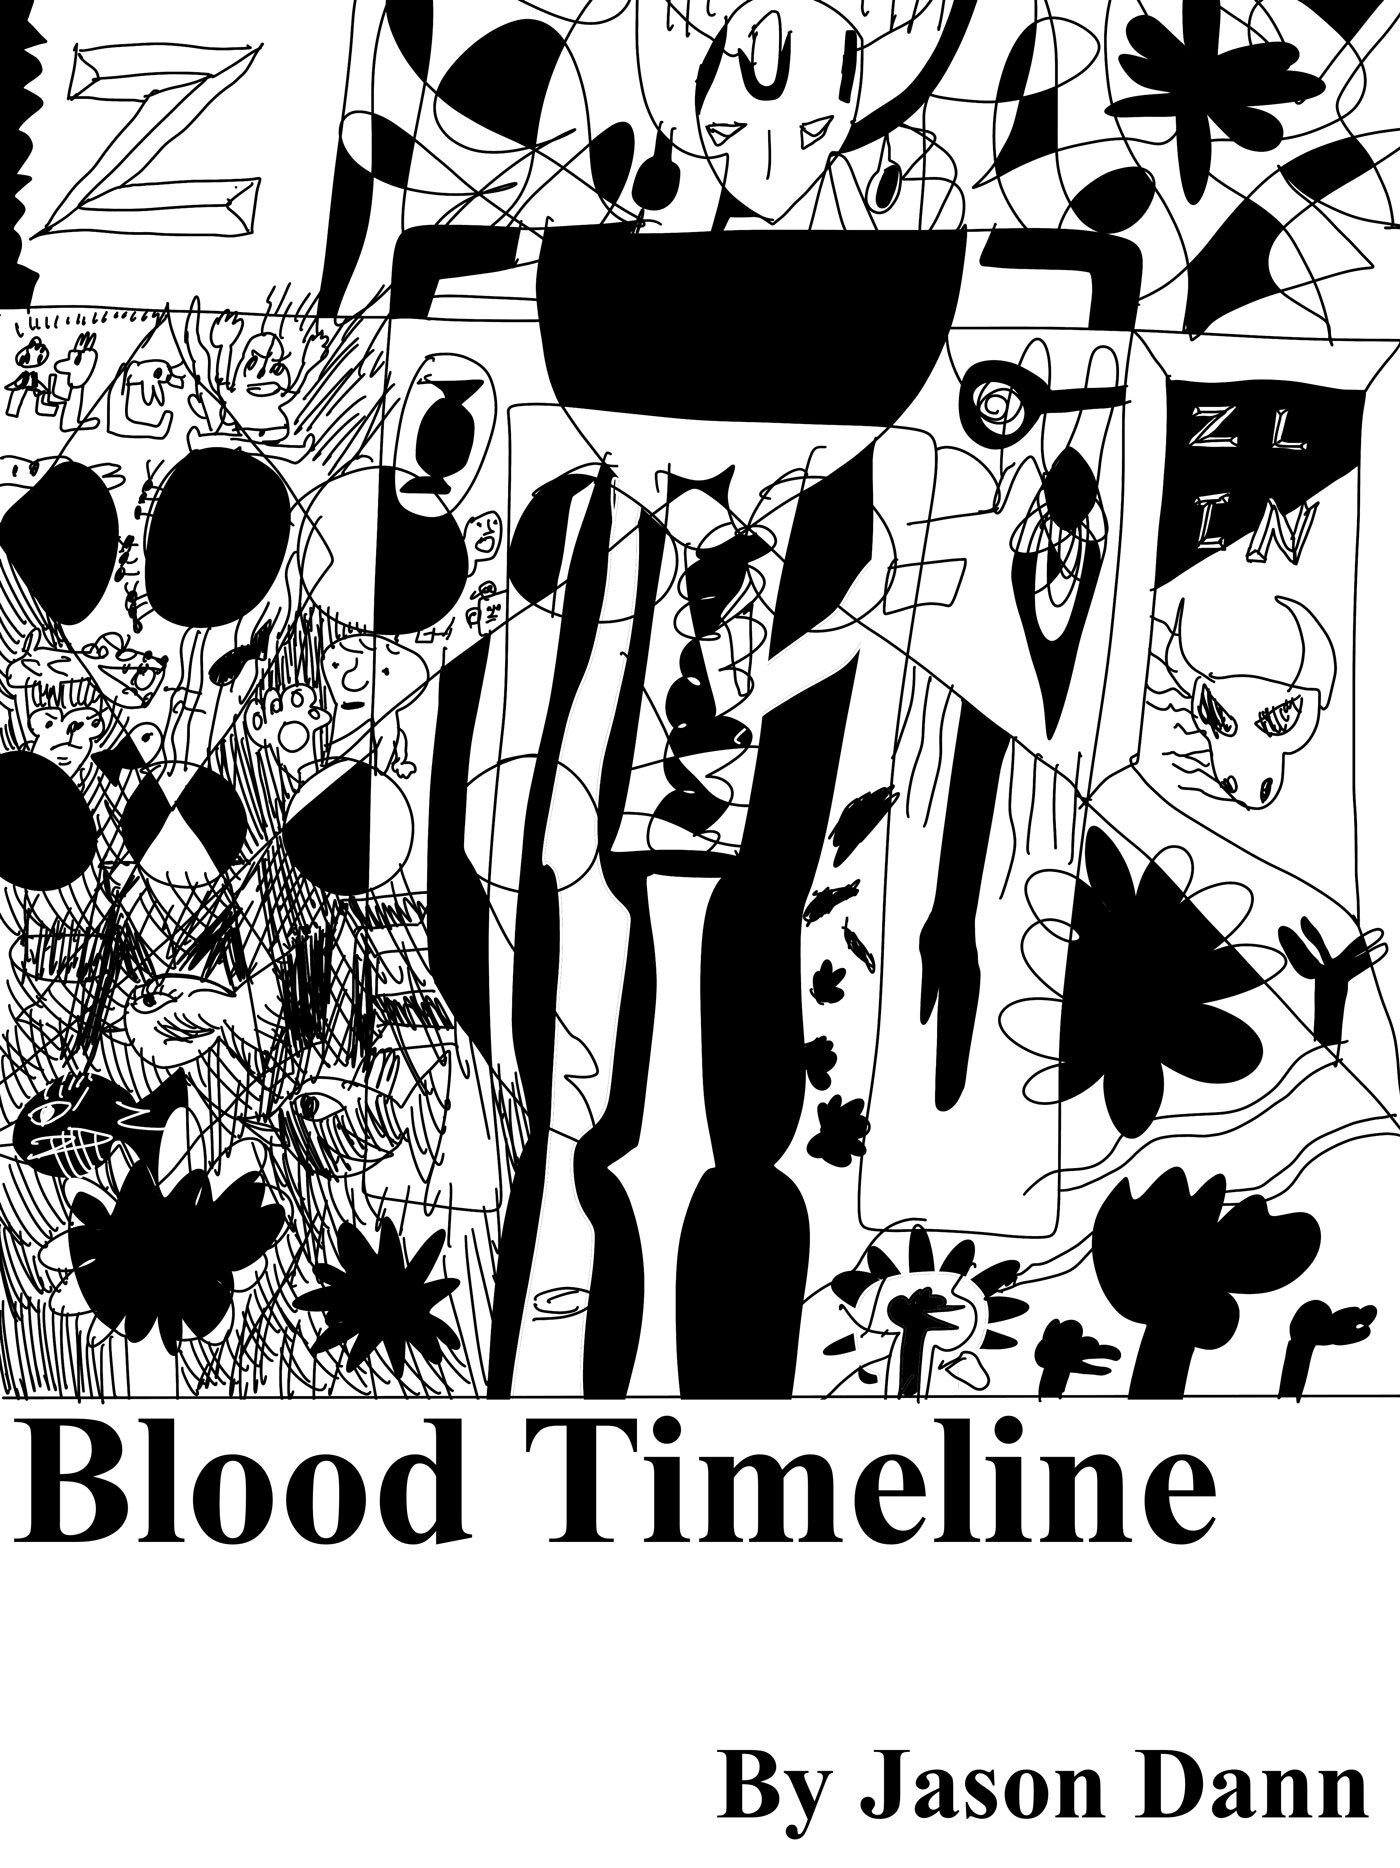 Cover Design: "Blood Timeline"